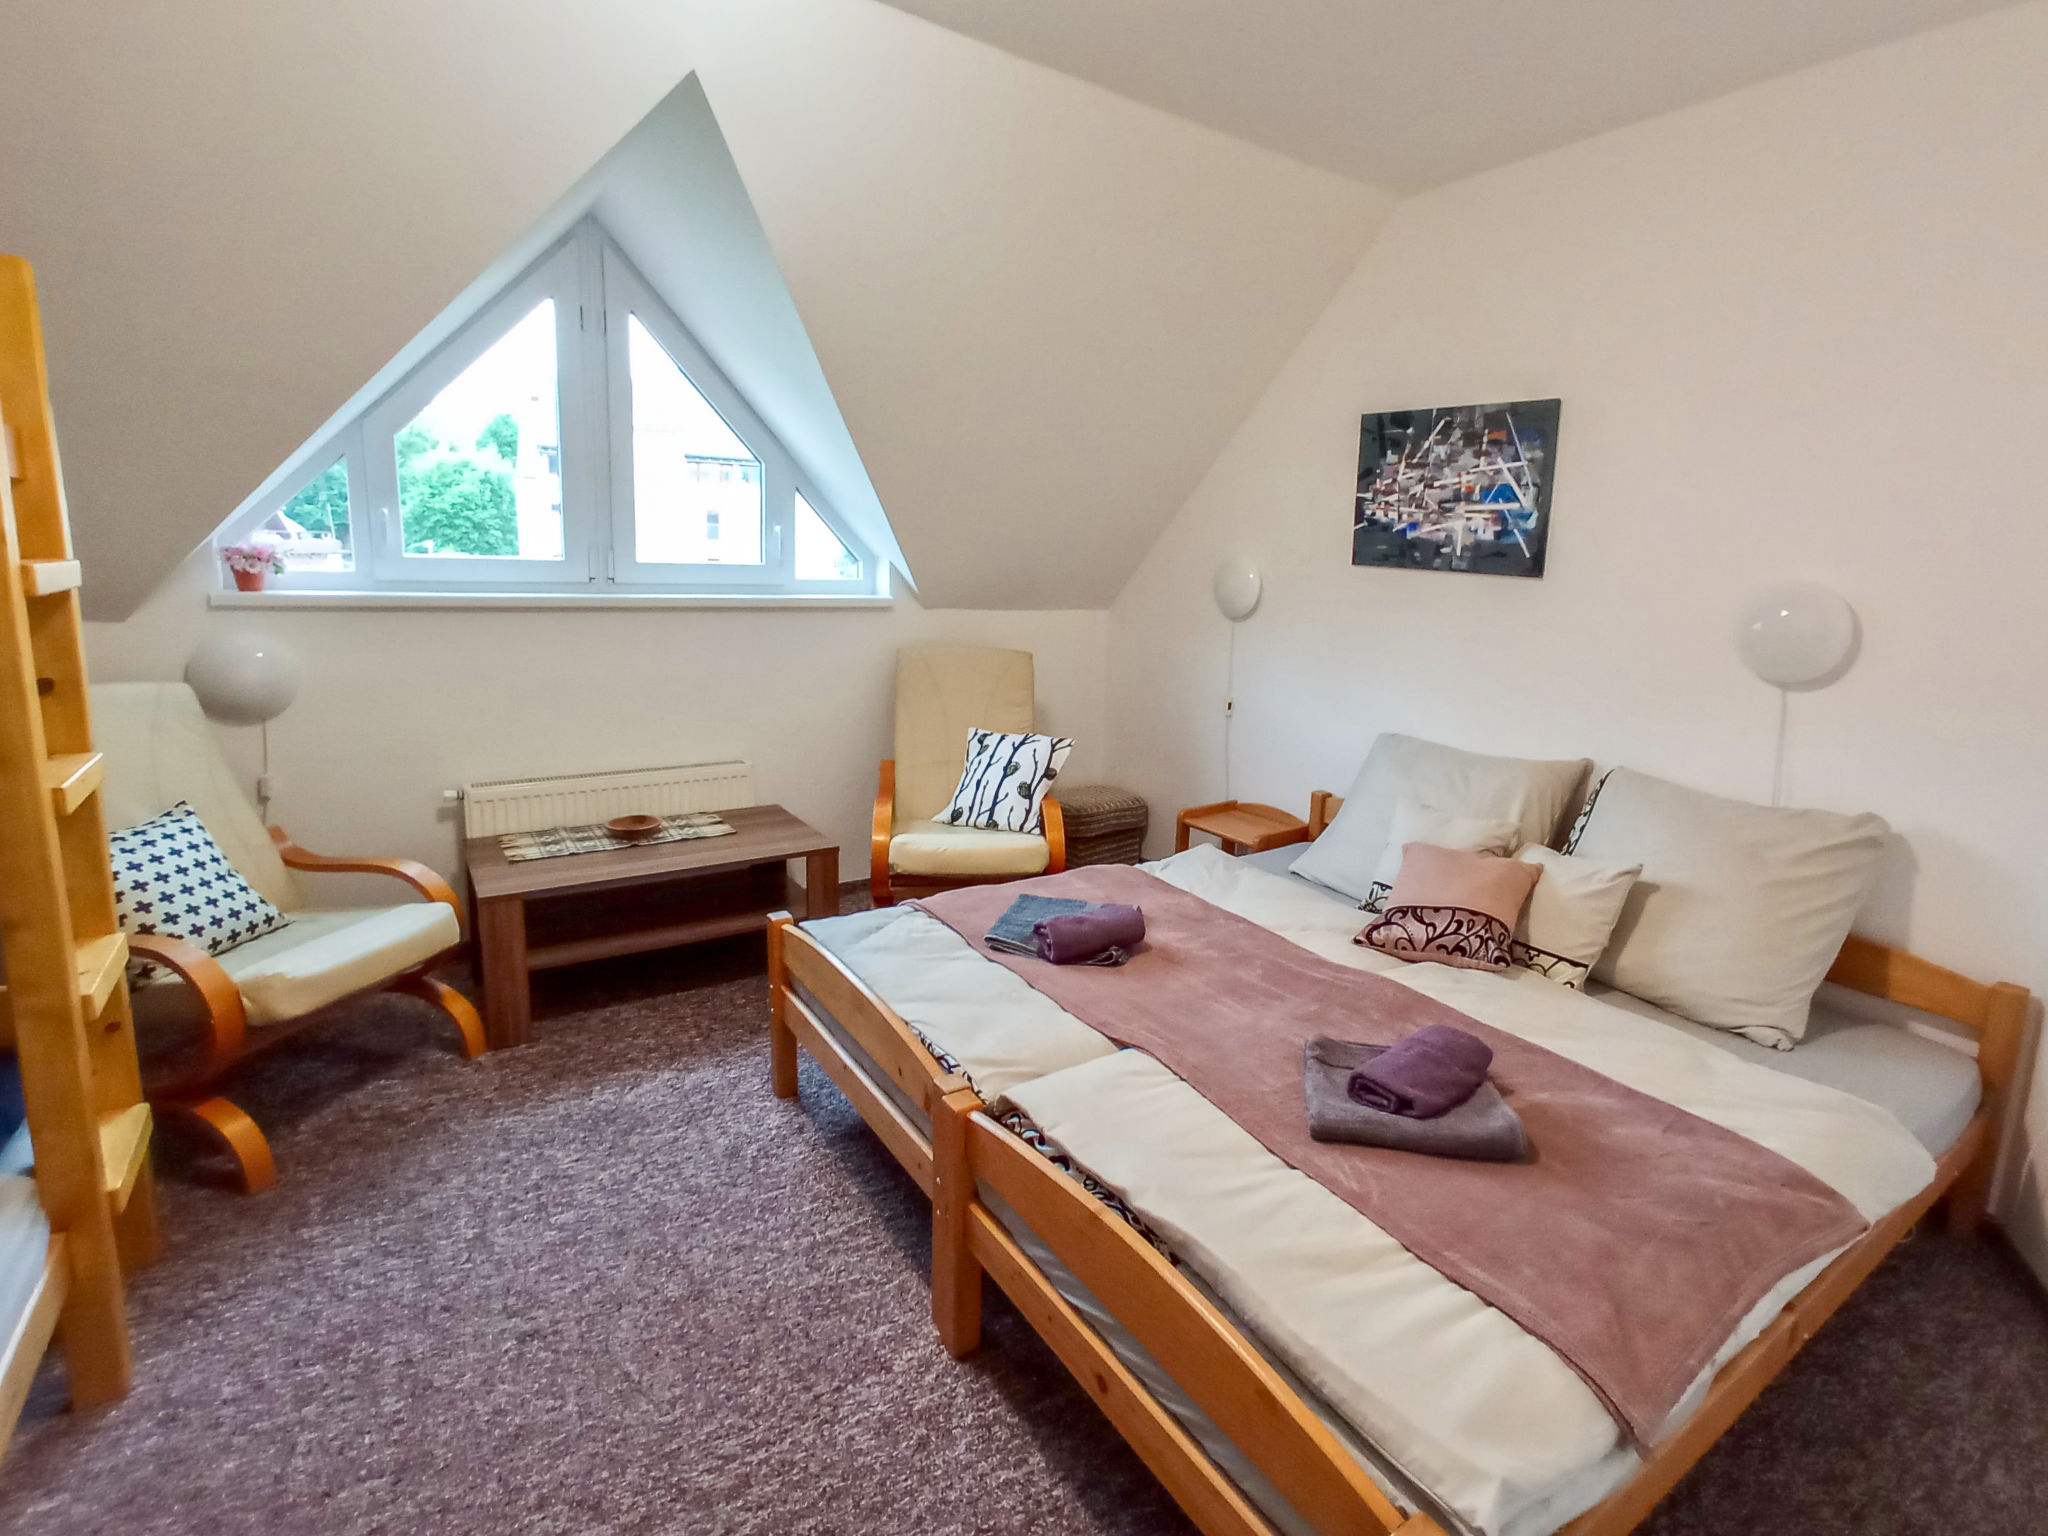 Foto 3 - Apartment mit 1 Schlafzimmer in Harrachov